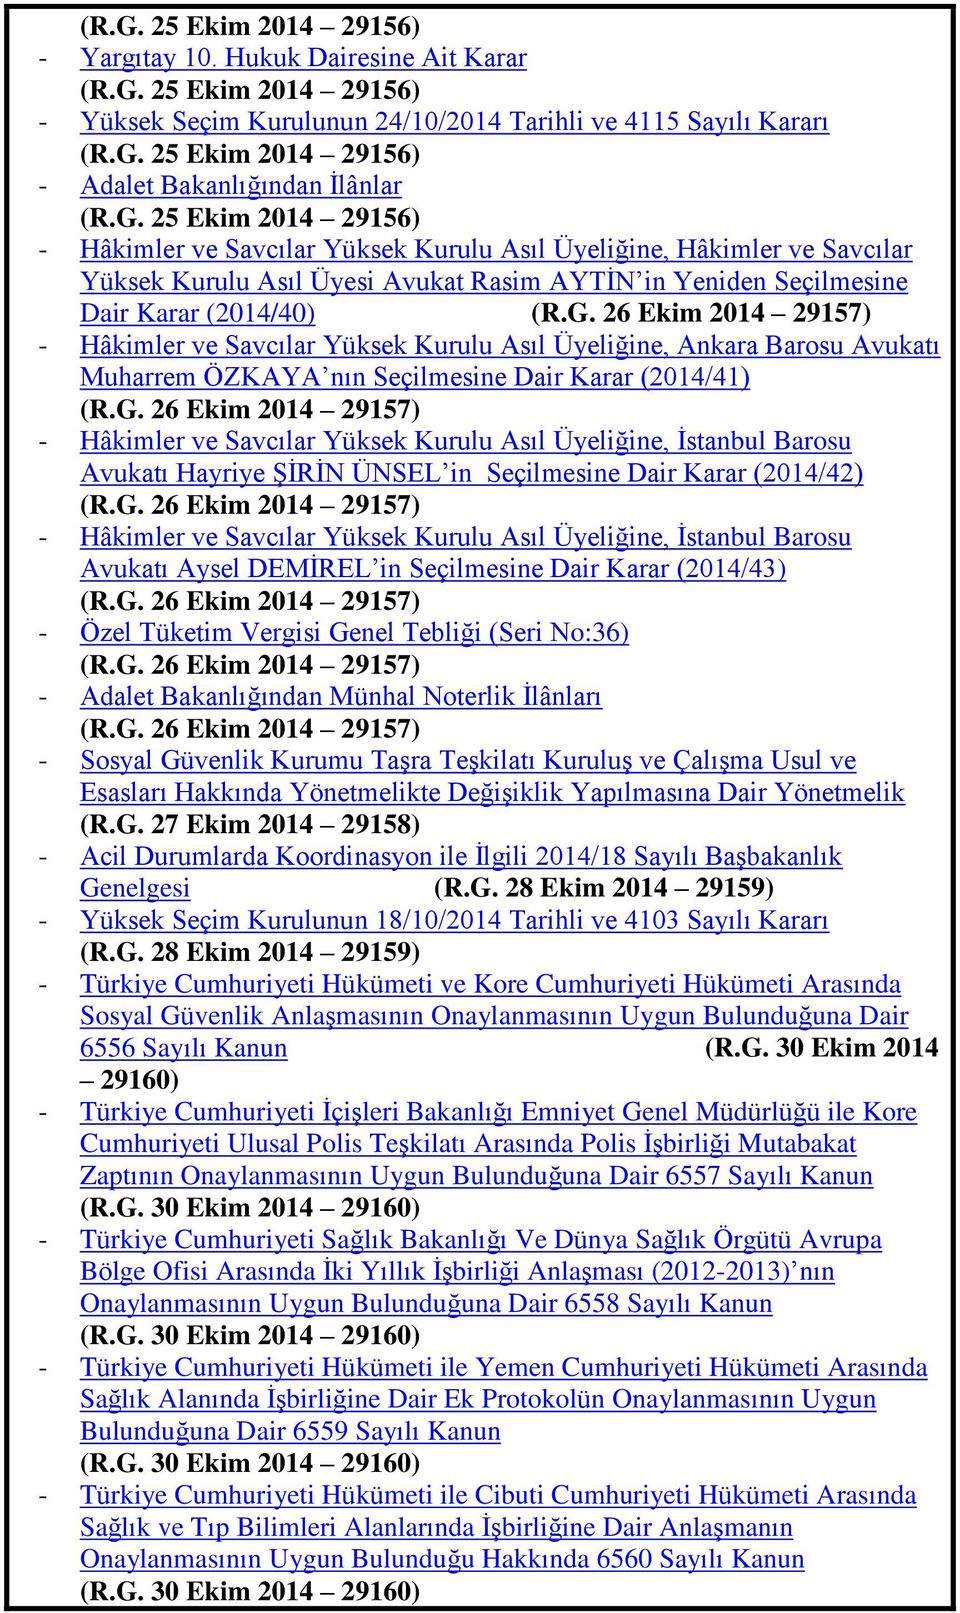 G. 26 Ekim 2014 29157) - Hâkimler ve Savcılar Yüksek Kurulu Asıl Üyeliğine, Ġstanbul Barosu Avukatı Hayriye ġġrġn ÜNSEL in Seçilmesine Dair Karar (2014/42) (R.G. 26 Ekim 2014 29157) - Hâkimler ve Savcılar Yüksek Kurulu Asıl Üyeliğine, Ġstanbul Barosu Avukatı Aysel DEMĠREL in Seçilmesine Dair Karar (2014/43) (R.